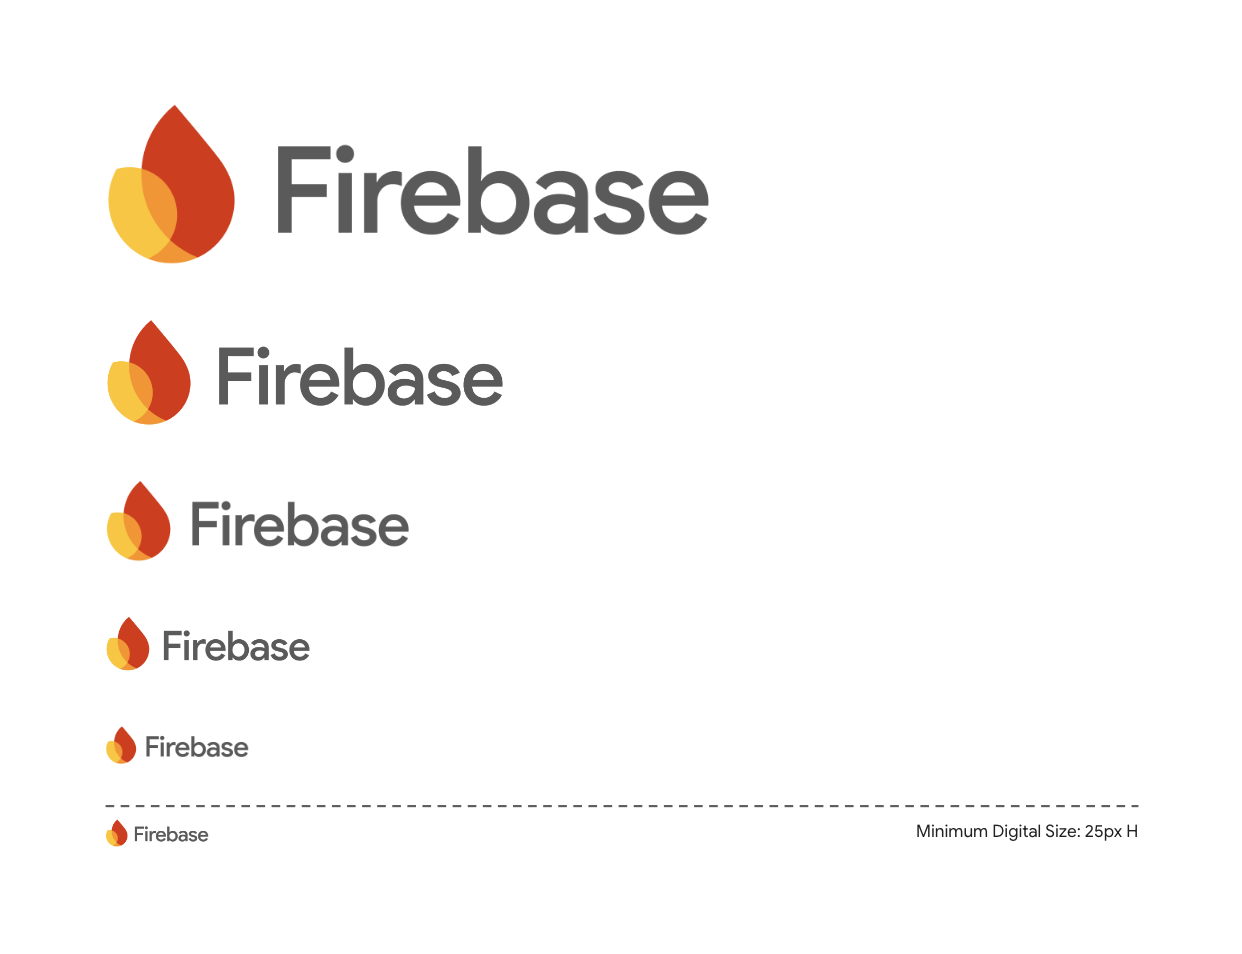 ロゴの高さの 2 倍以上の余白がある Firebase ロゴの例